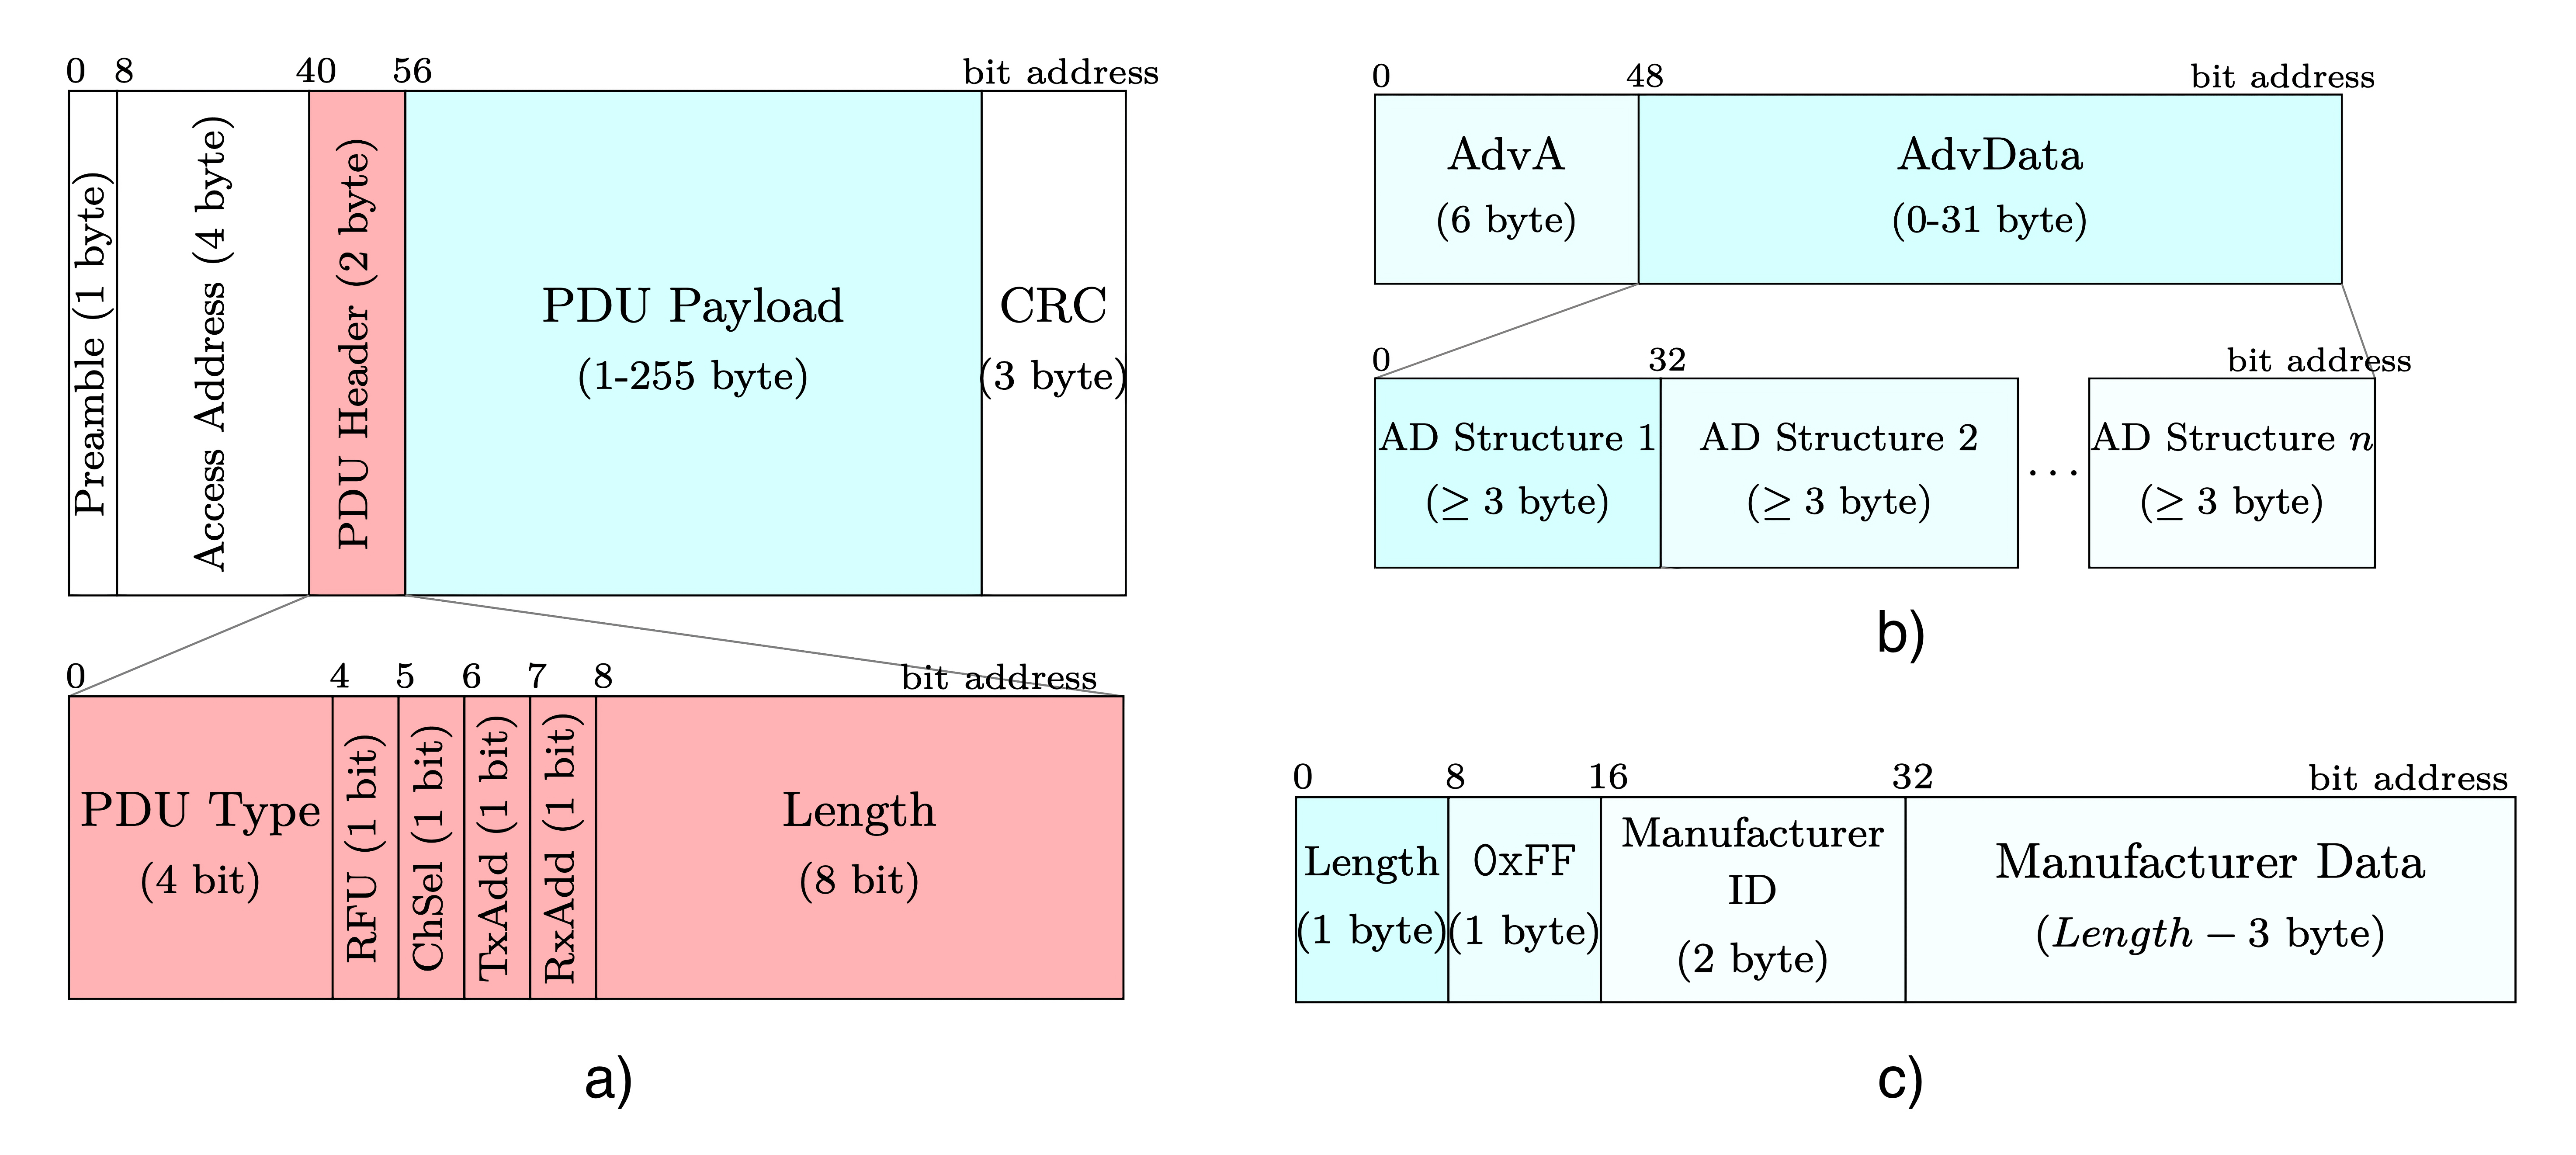  Рис 2. a) Структура рекламного пакета и его заголовка. b) Структура поля полезной нагрузки (PDU Payload). c) Пример содержимого поля AD Structure с информацией производителя устройства.